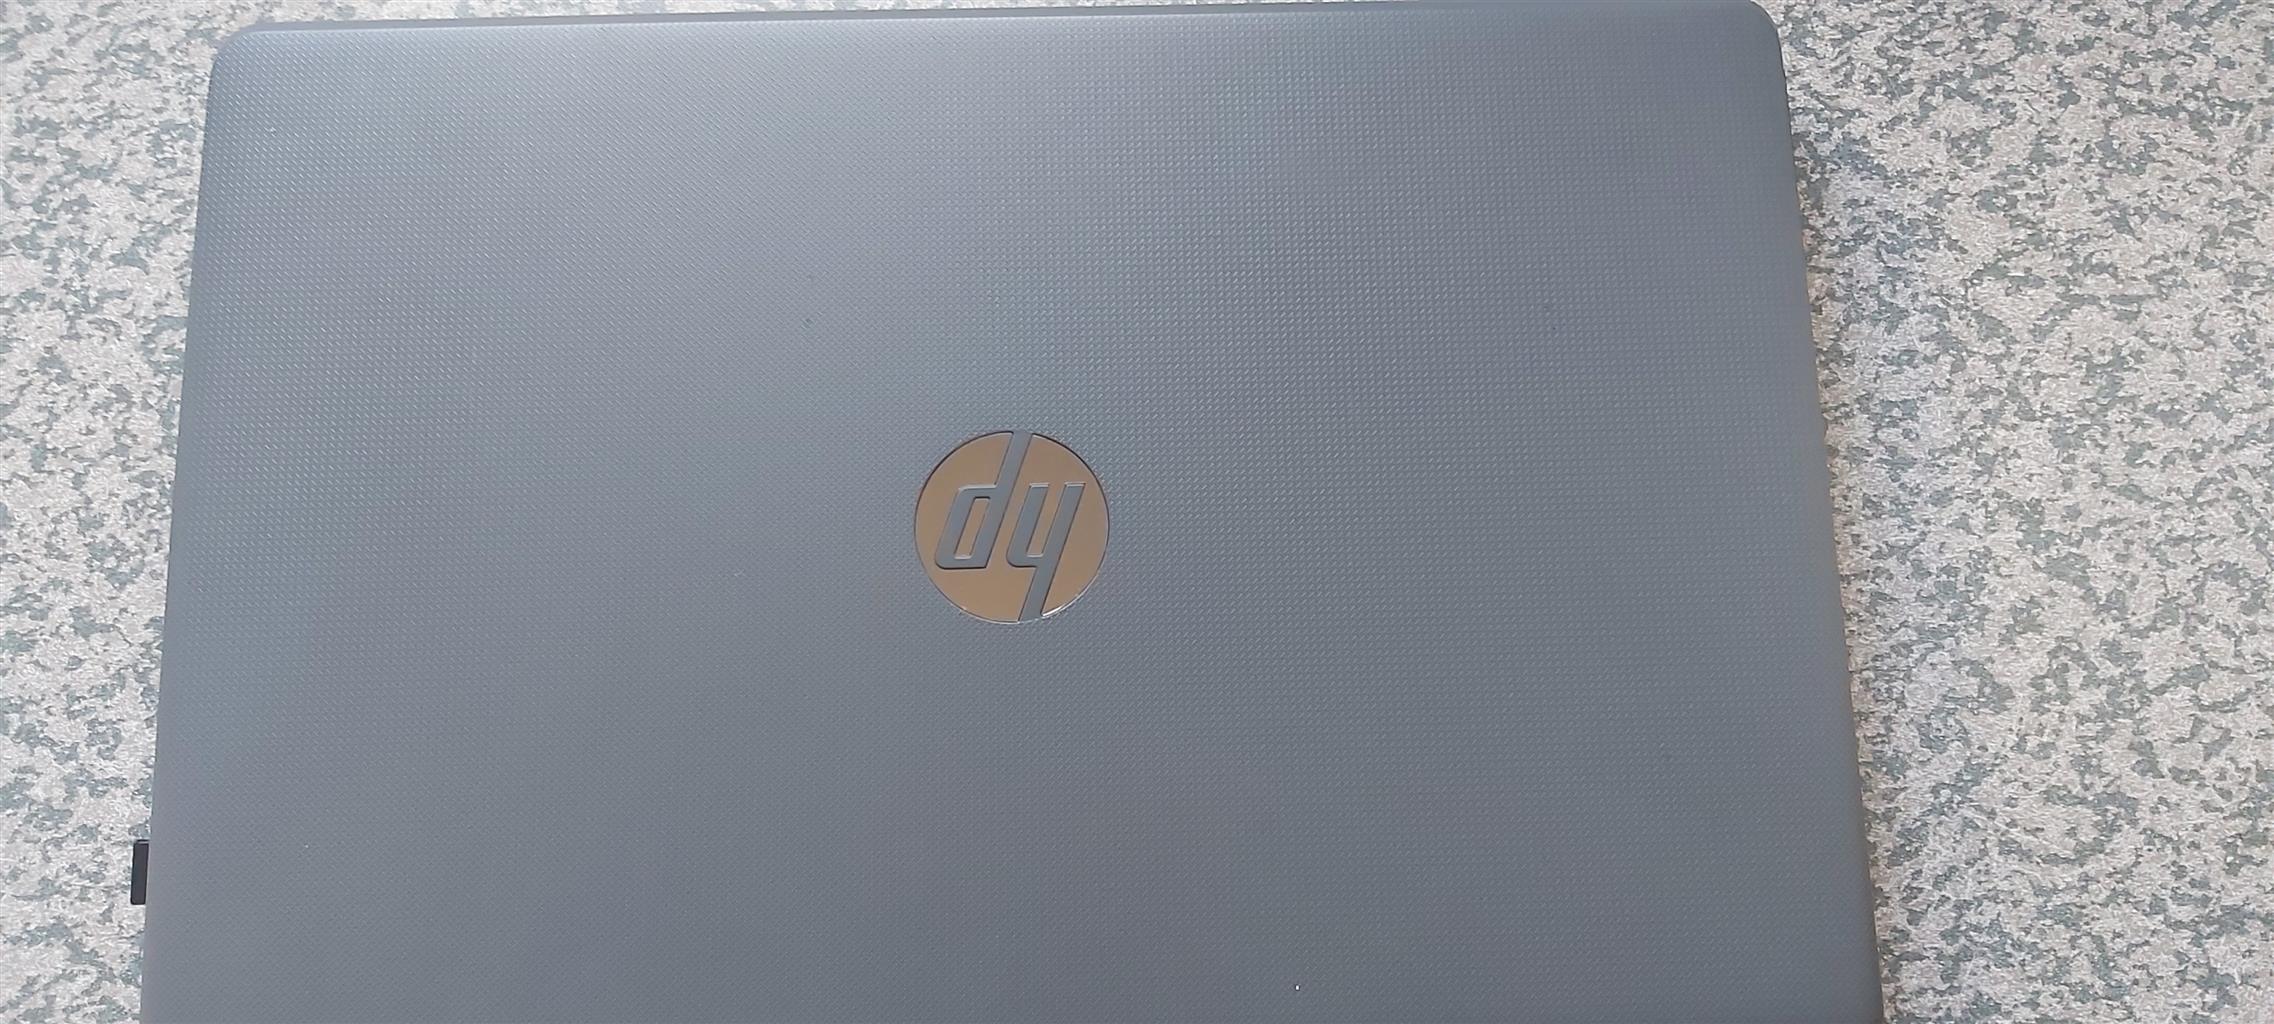 Hp I5 4gb 1Tb Harddrive Lapto